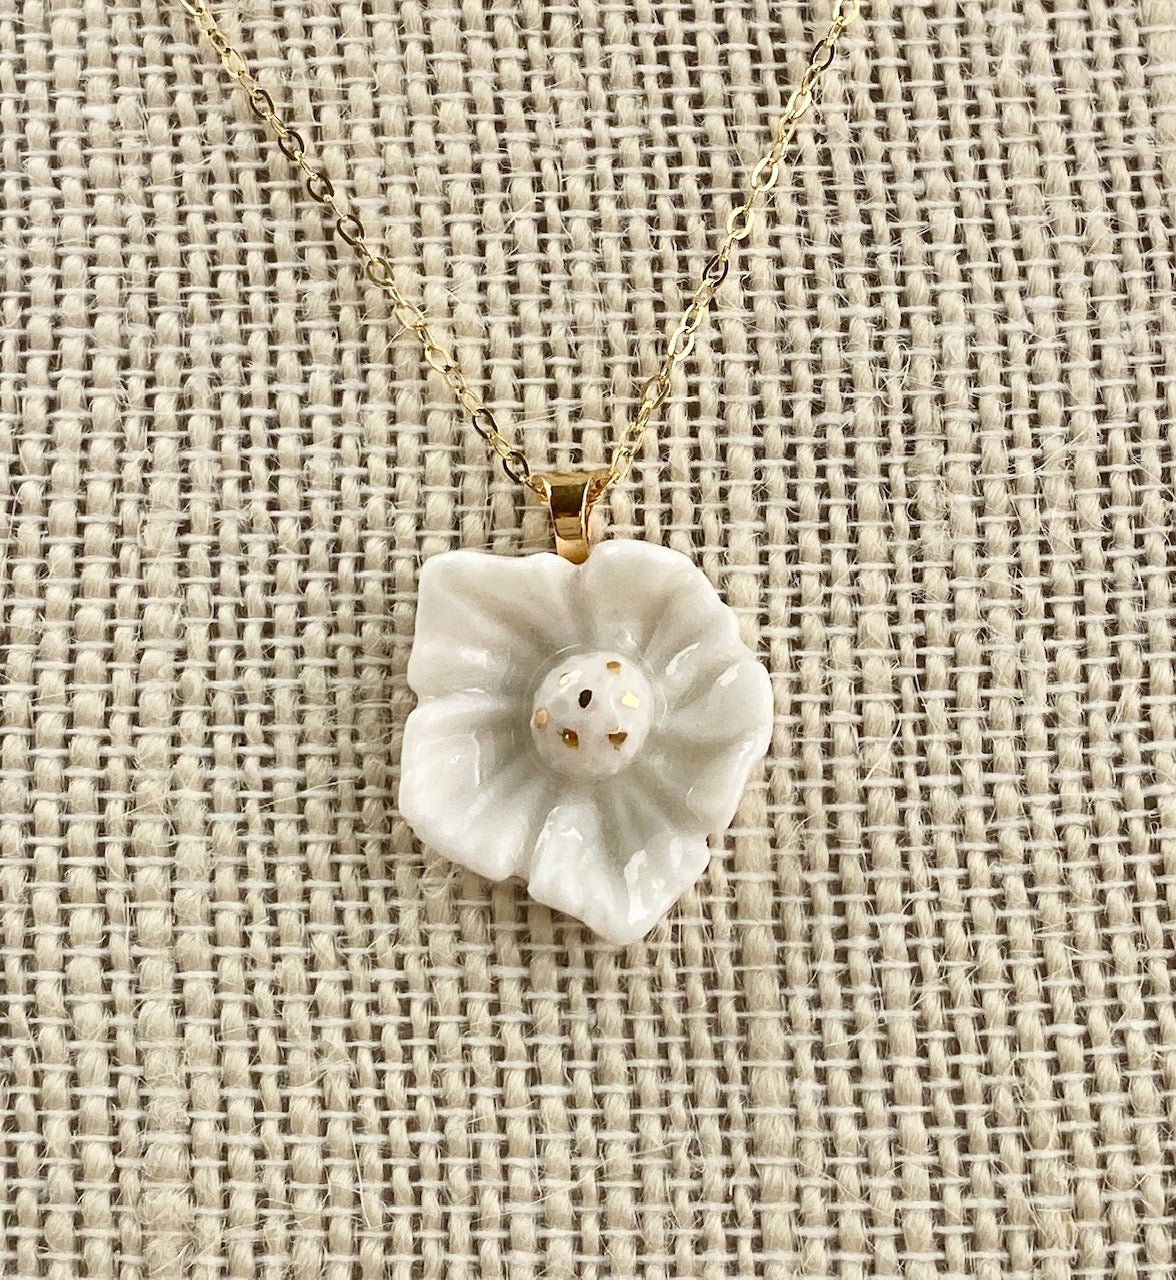 Dogwood flower porcelain necklace.